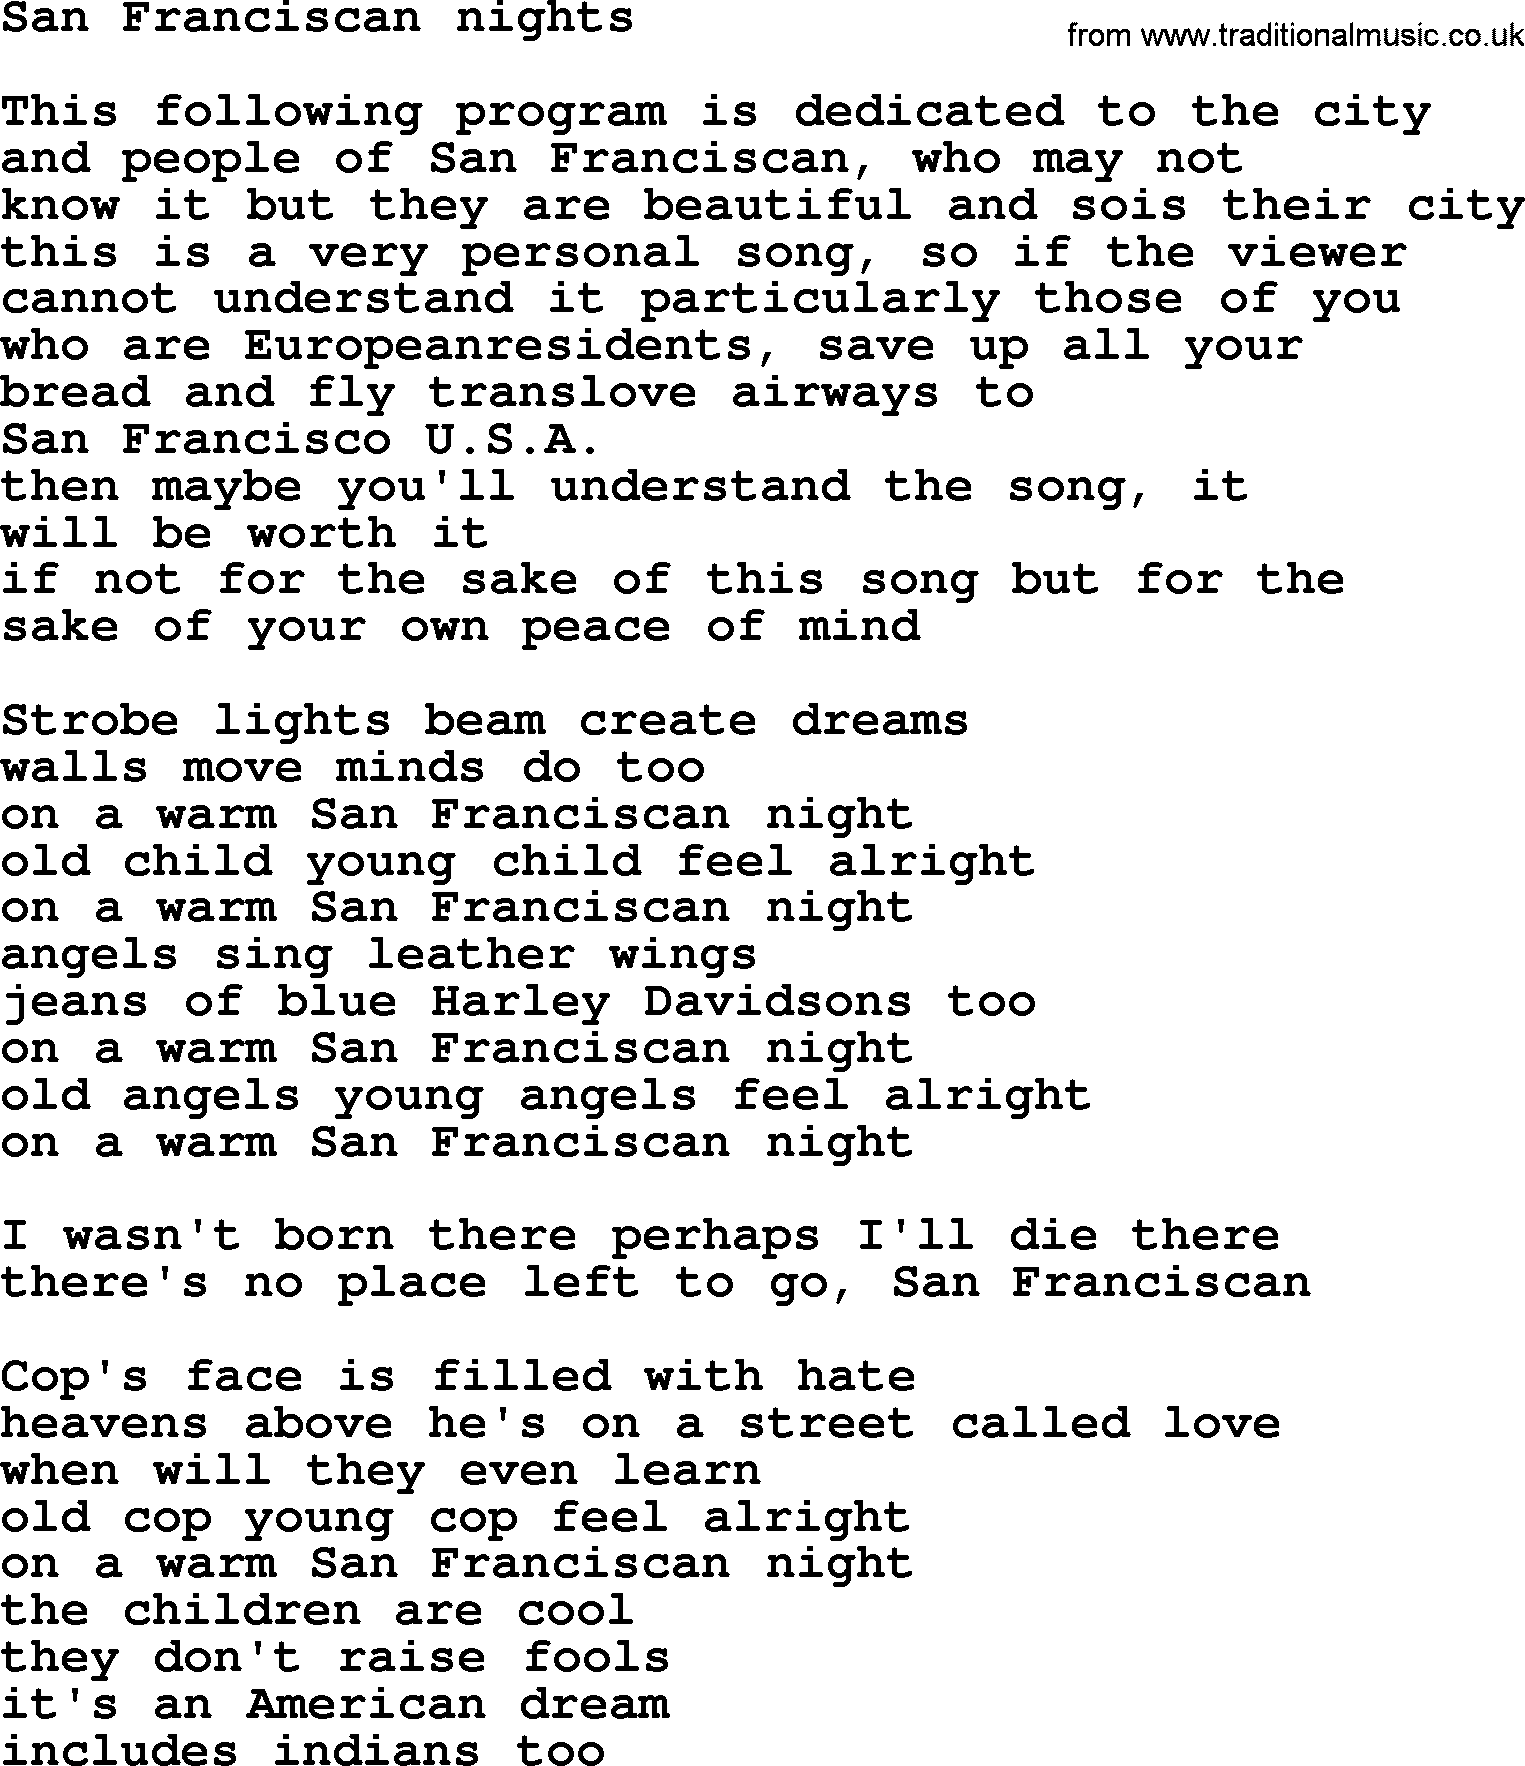 The Byrds song San Franciscan Nights, lyrics